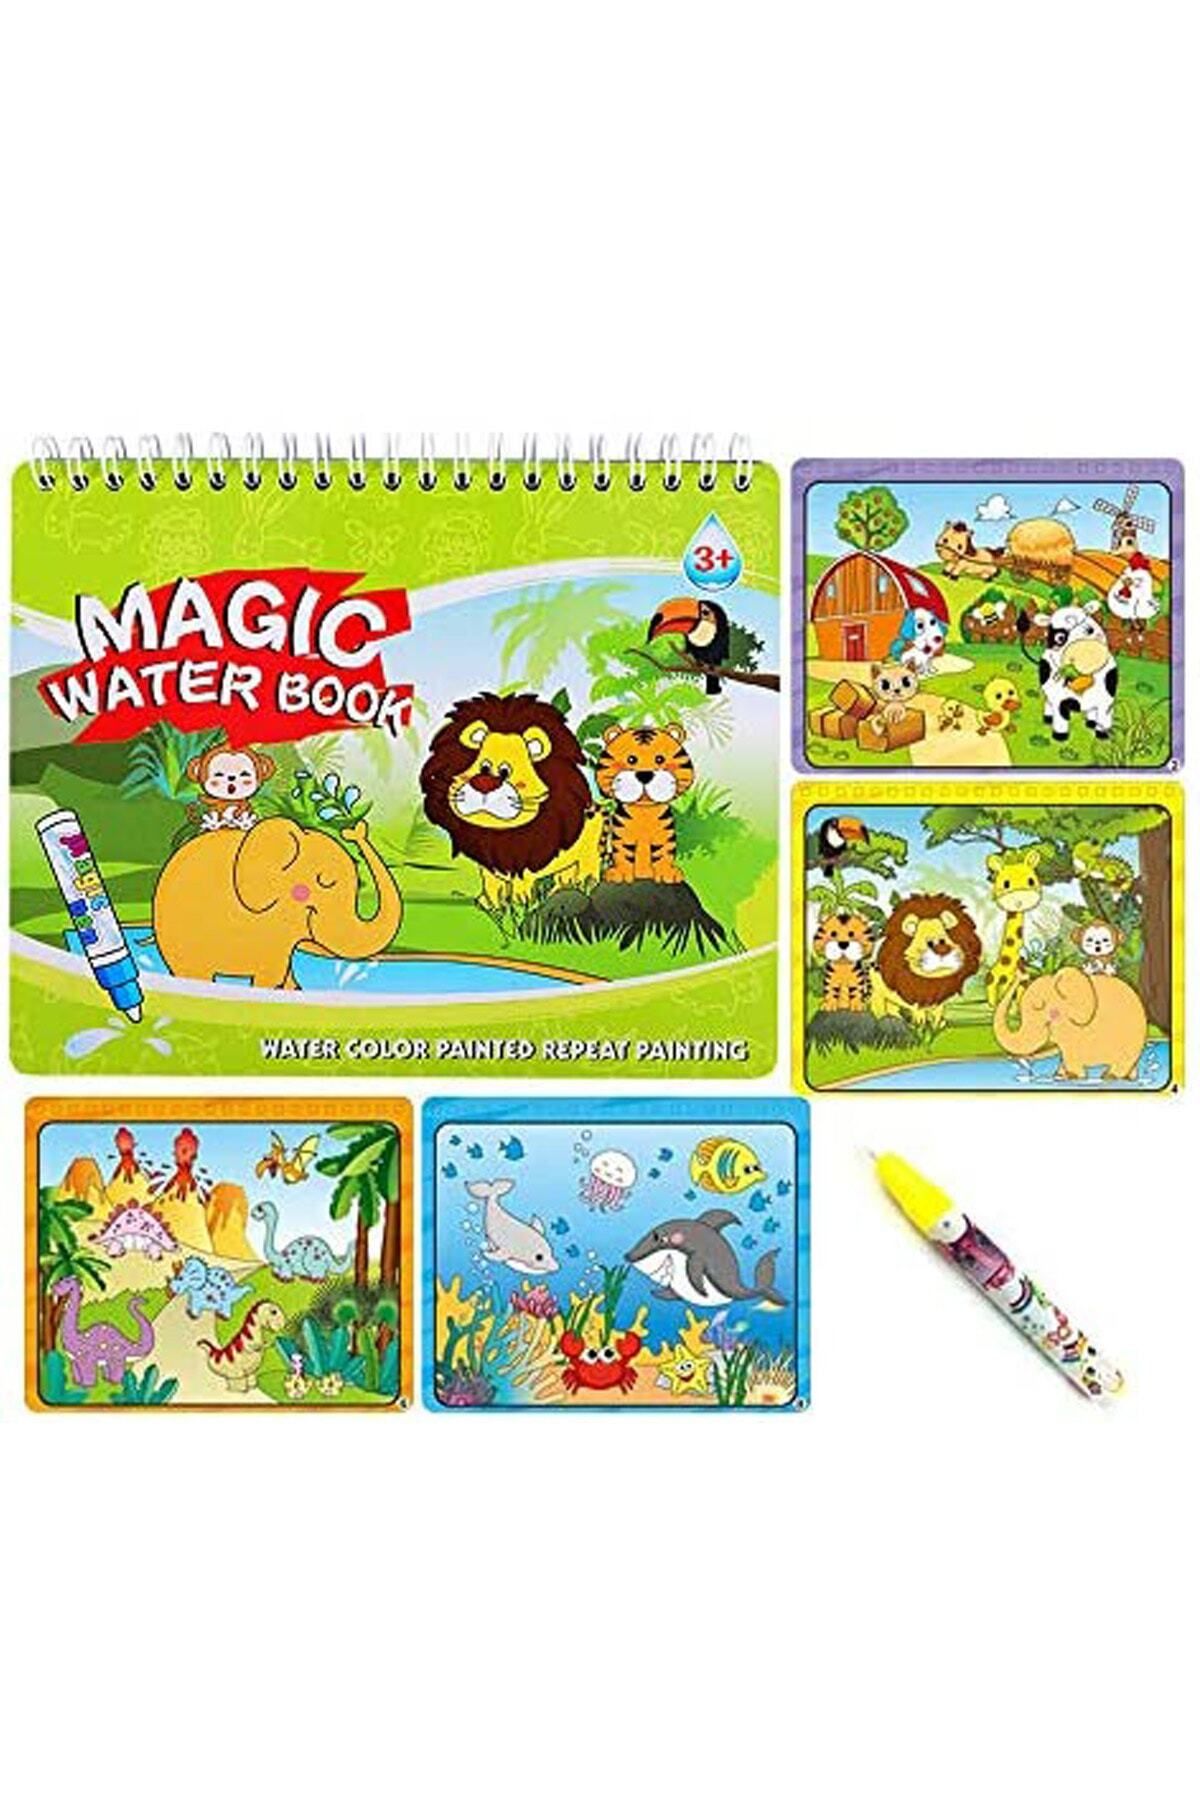 Magic Water Sihirli Boyama Kitabı Hayvanlar Eğitici Boyama Kitabı Okul Öncesi Eğitim